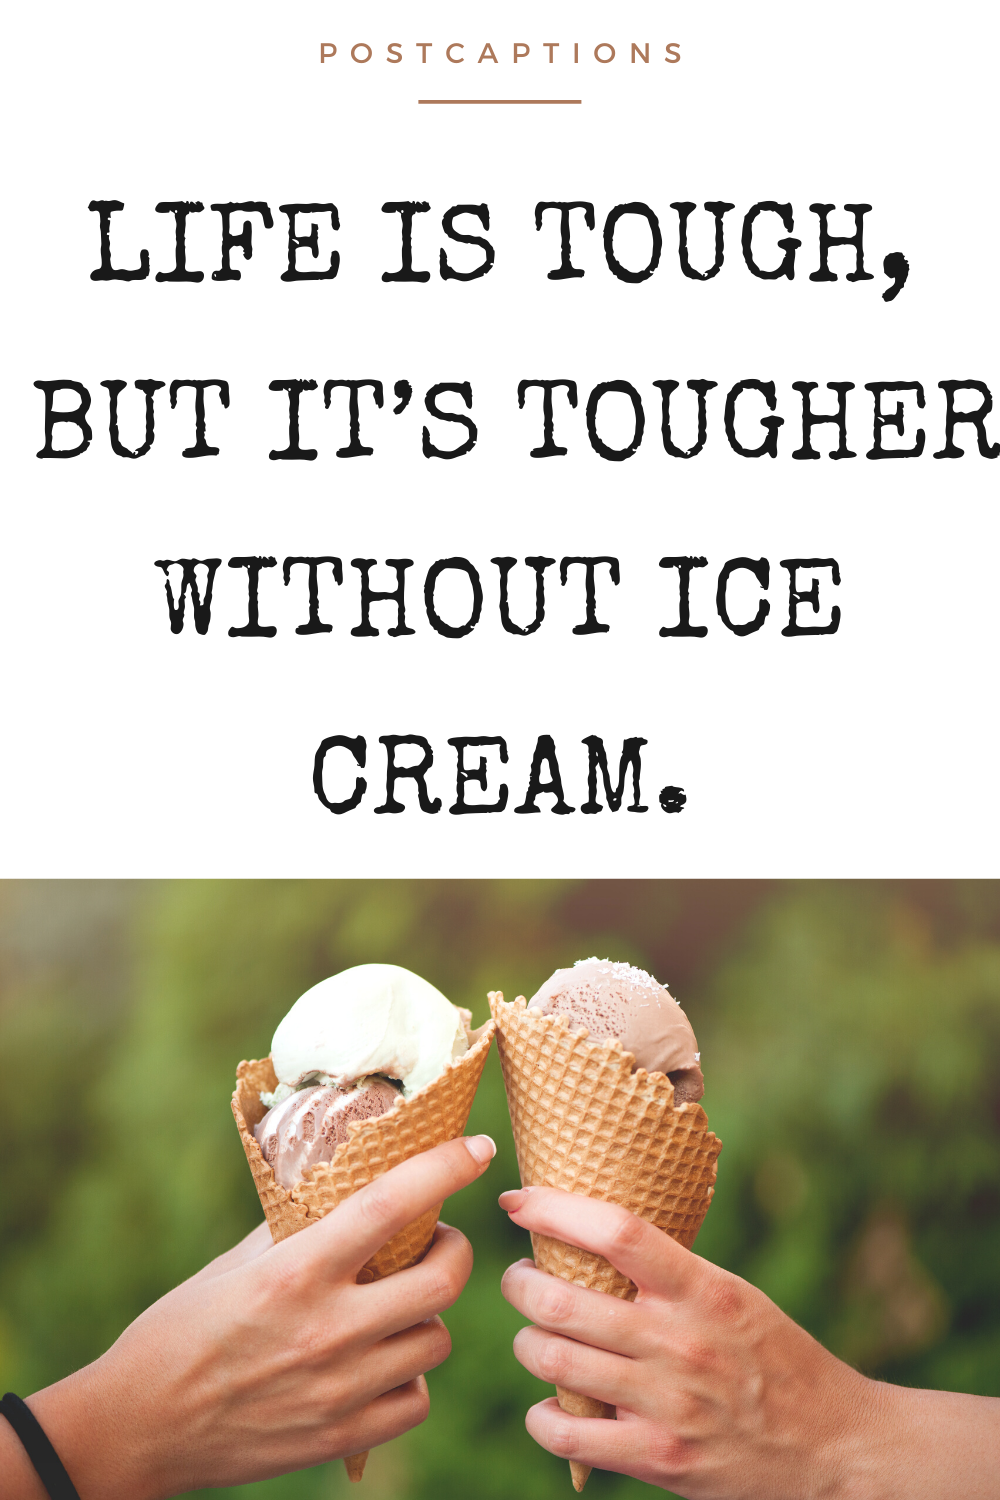 Ice cream captions